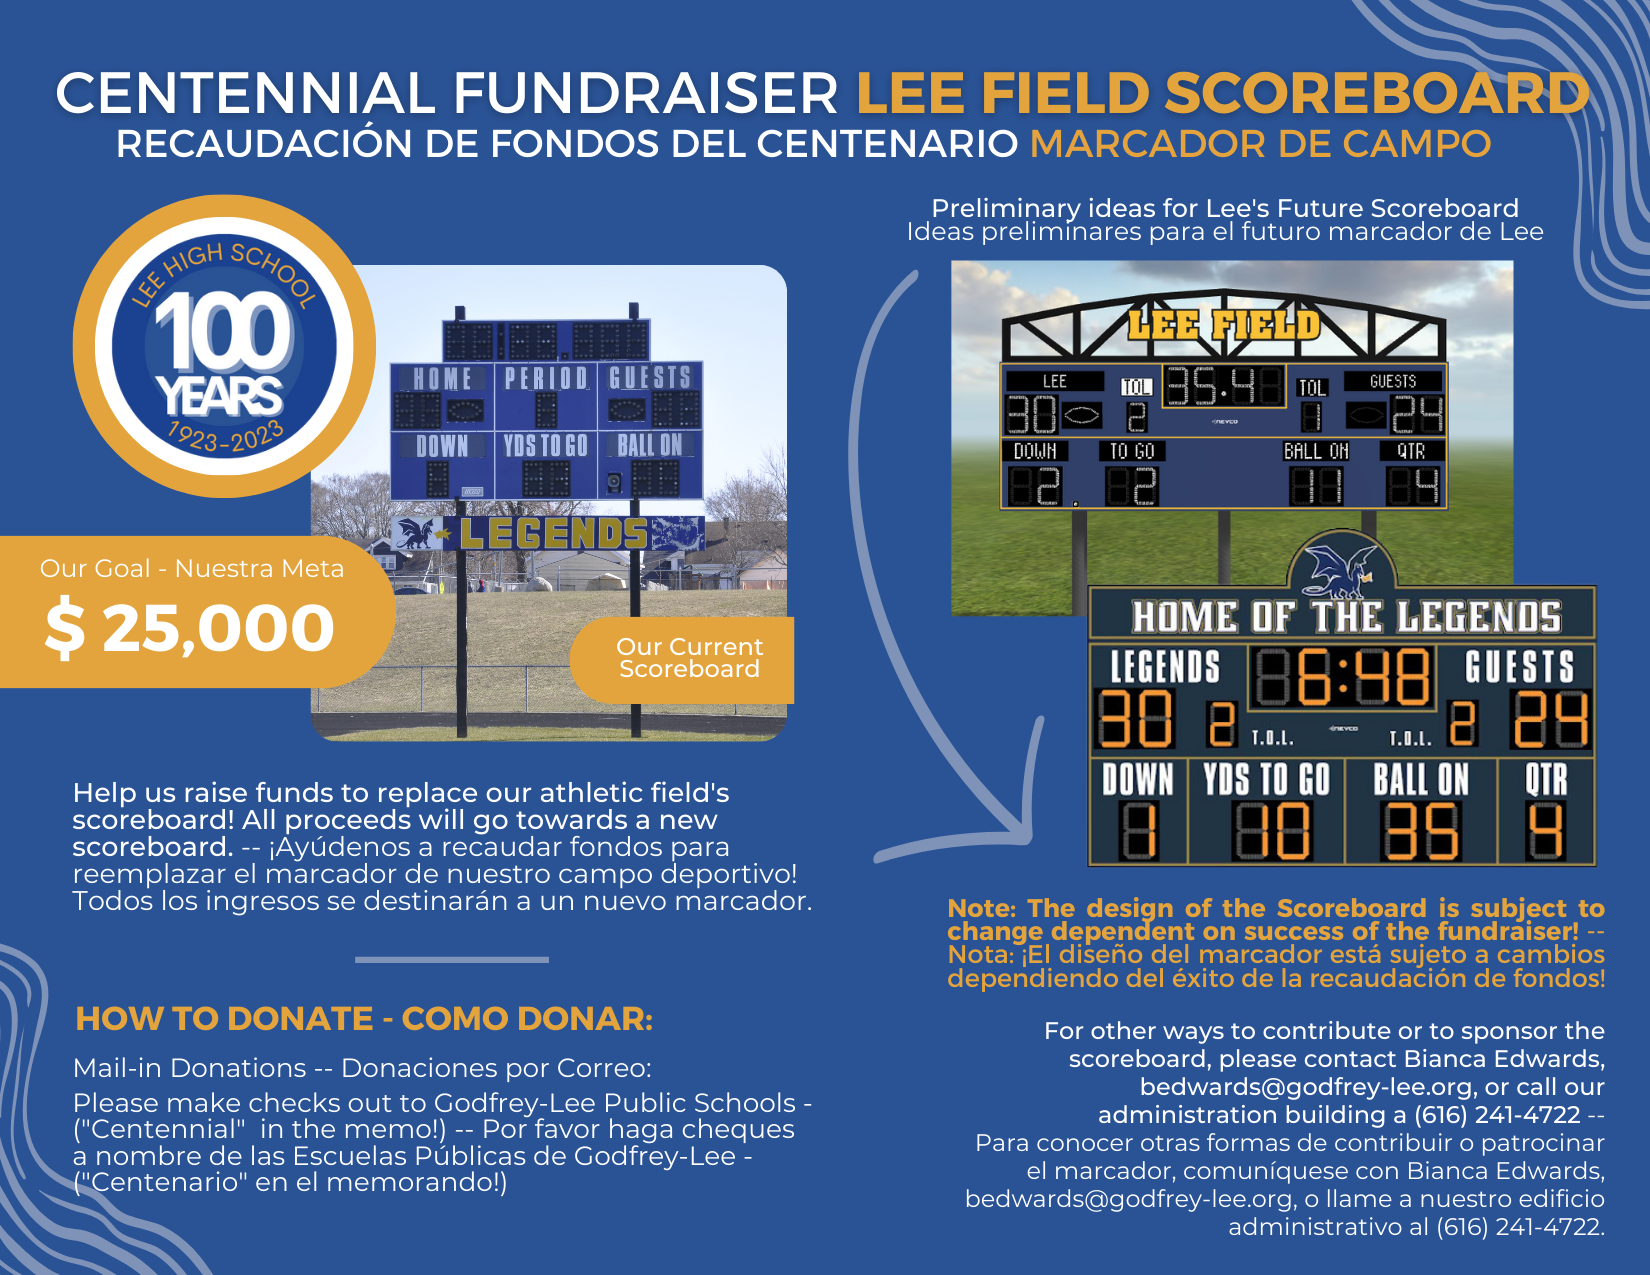 Centennial Fundraiser Details